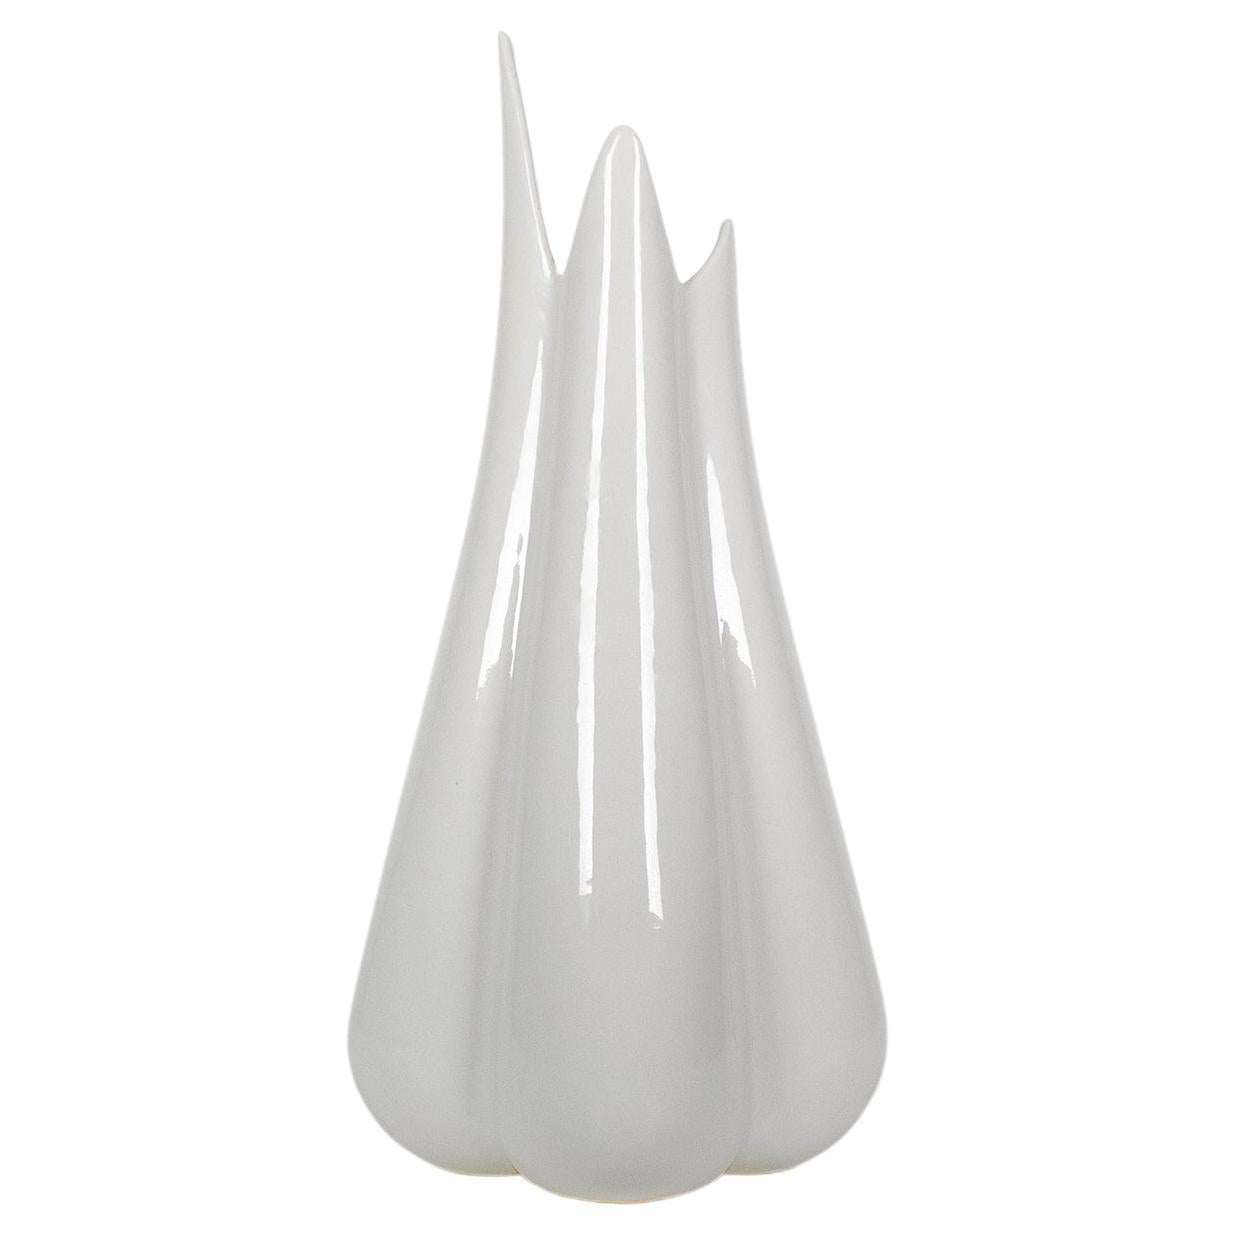 Lilium Vase, Mist White - Gloss